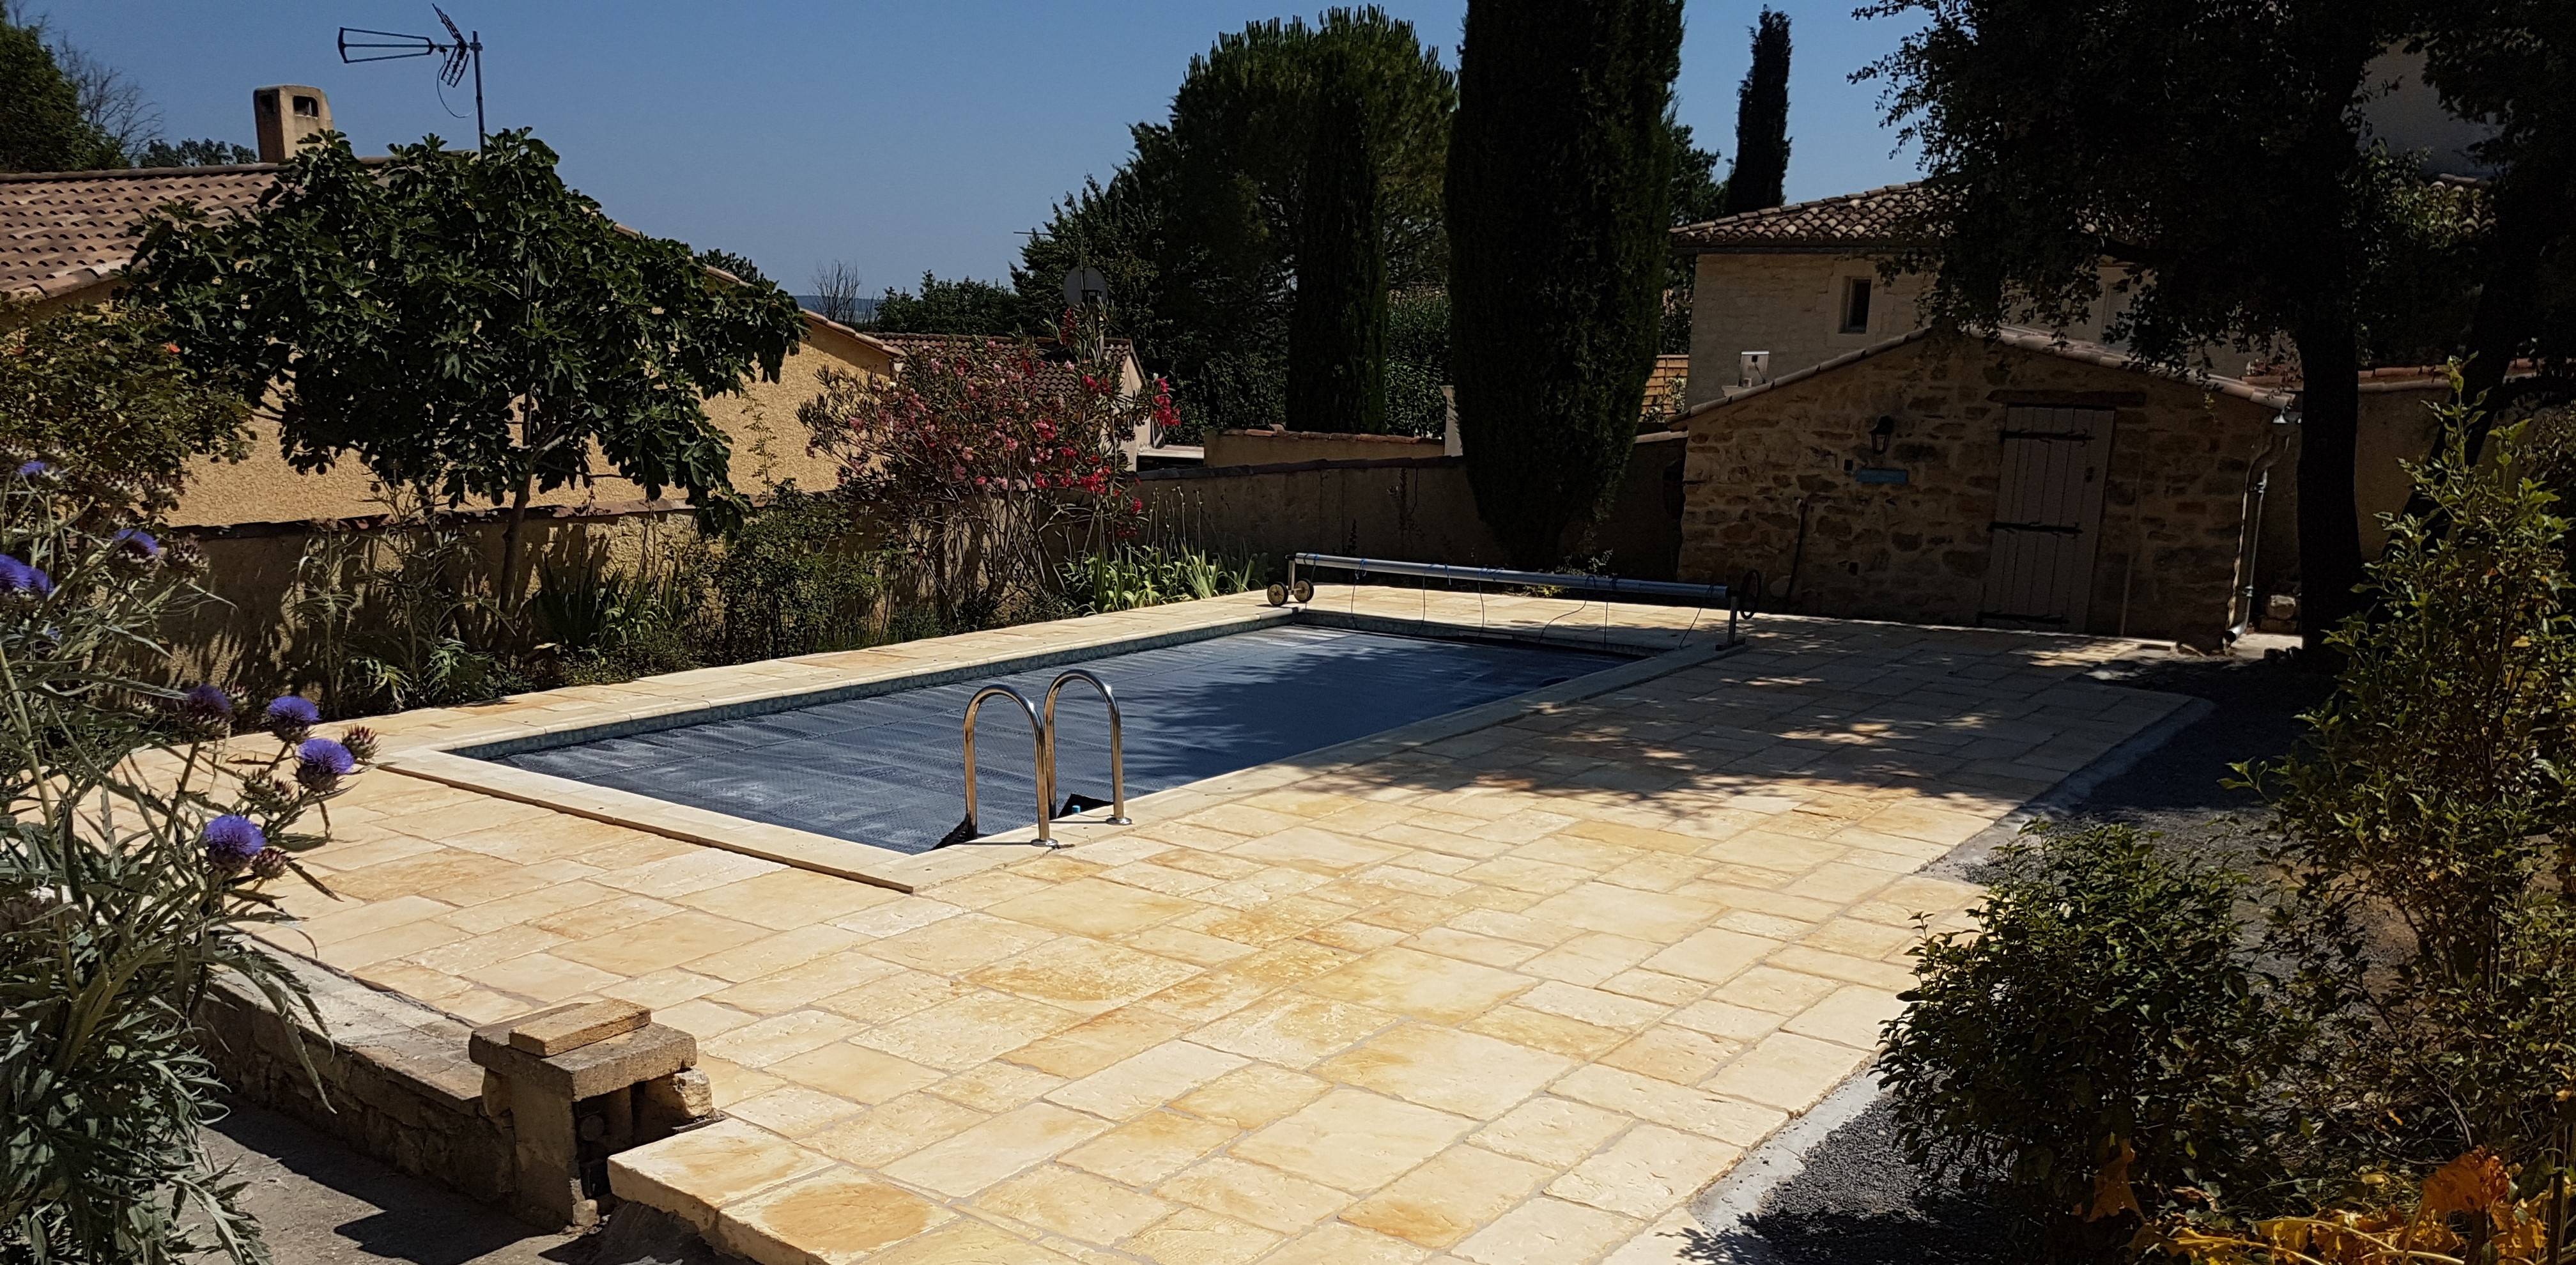 Cration Plage de piscine en dallage - Gard conue le 18/07/2019